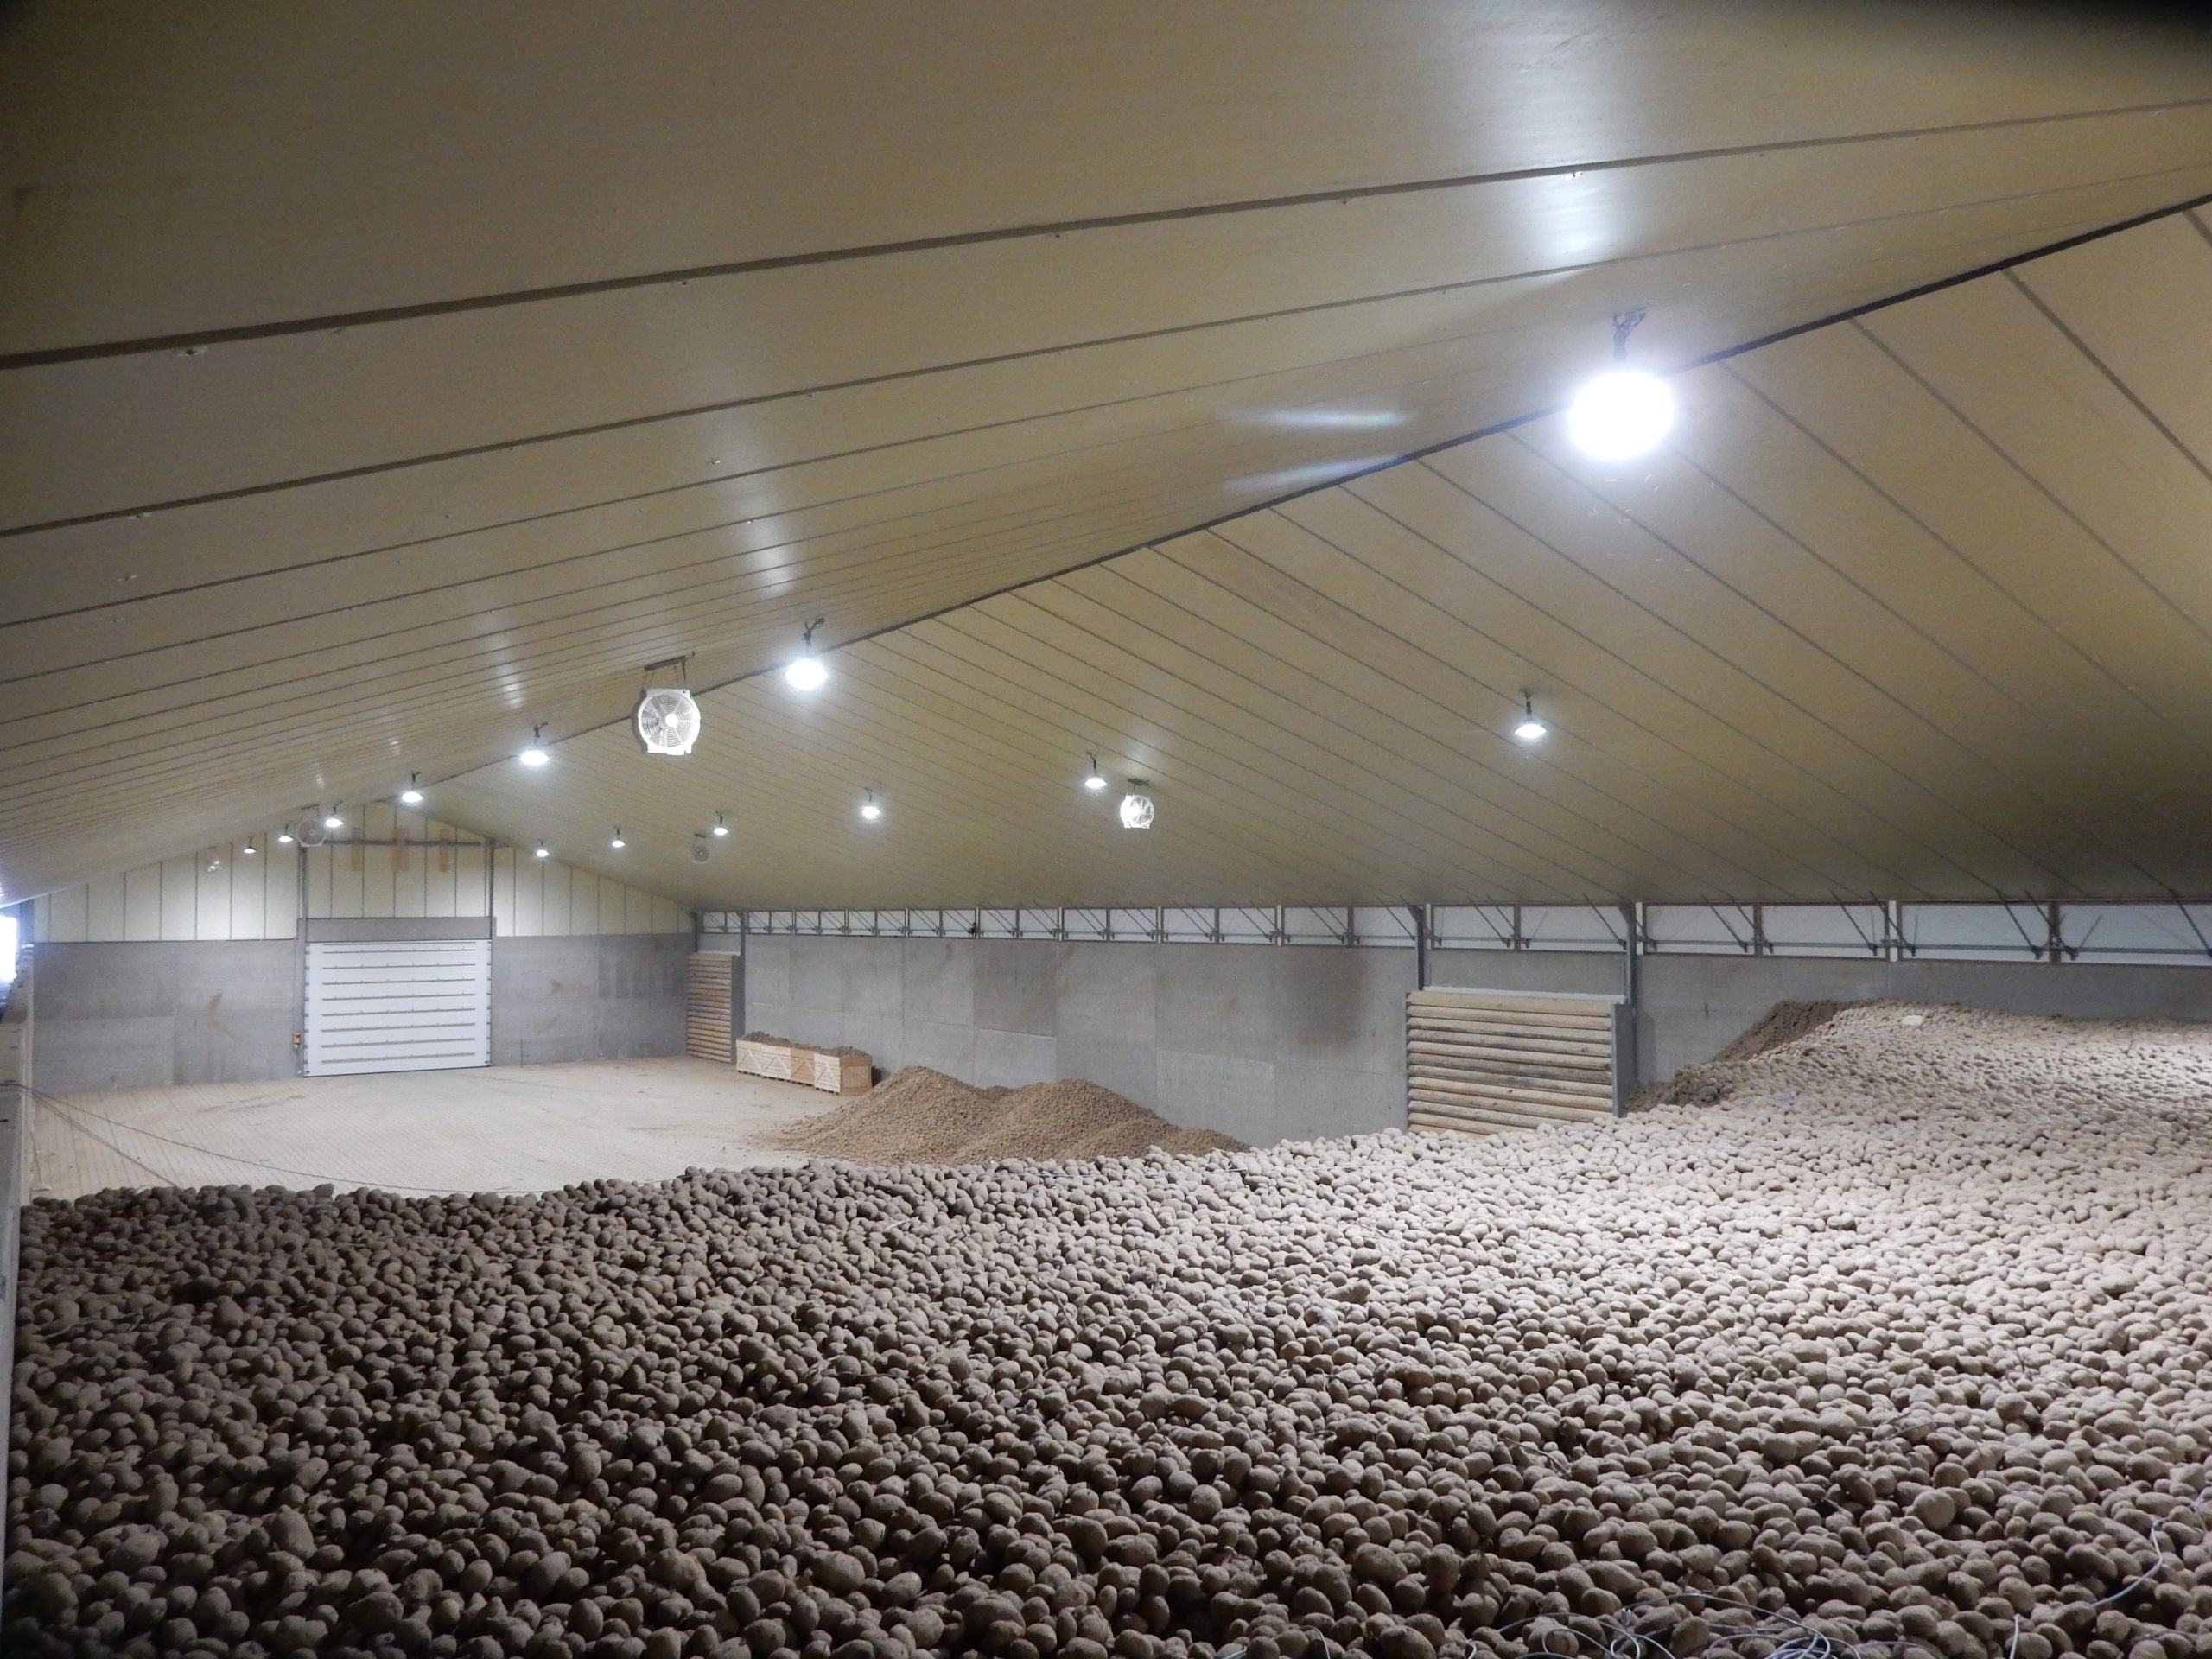 Gestion de la crise Covid-19 par le secteur belge de la pomme de terre